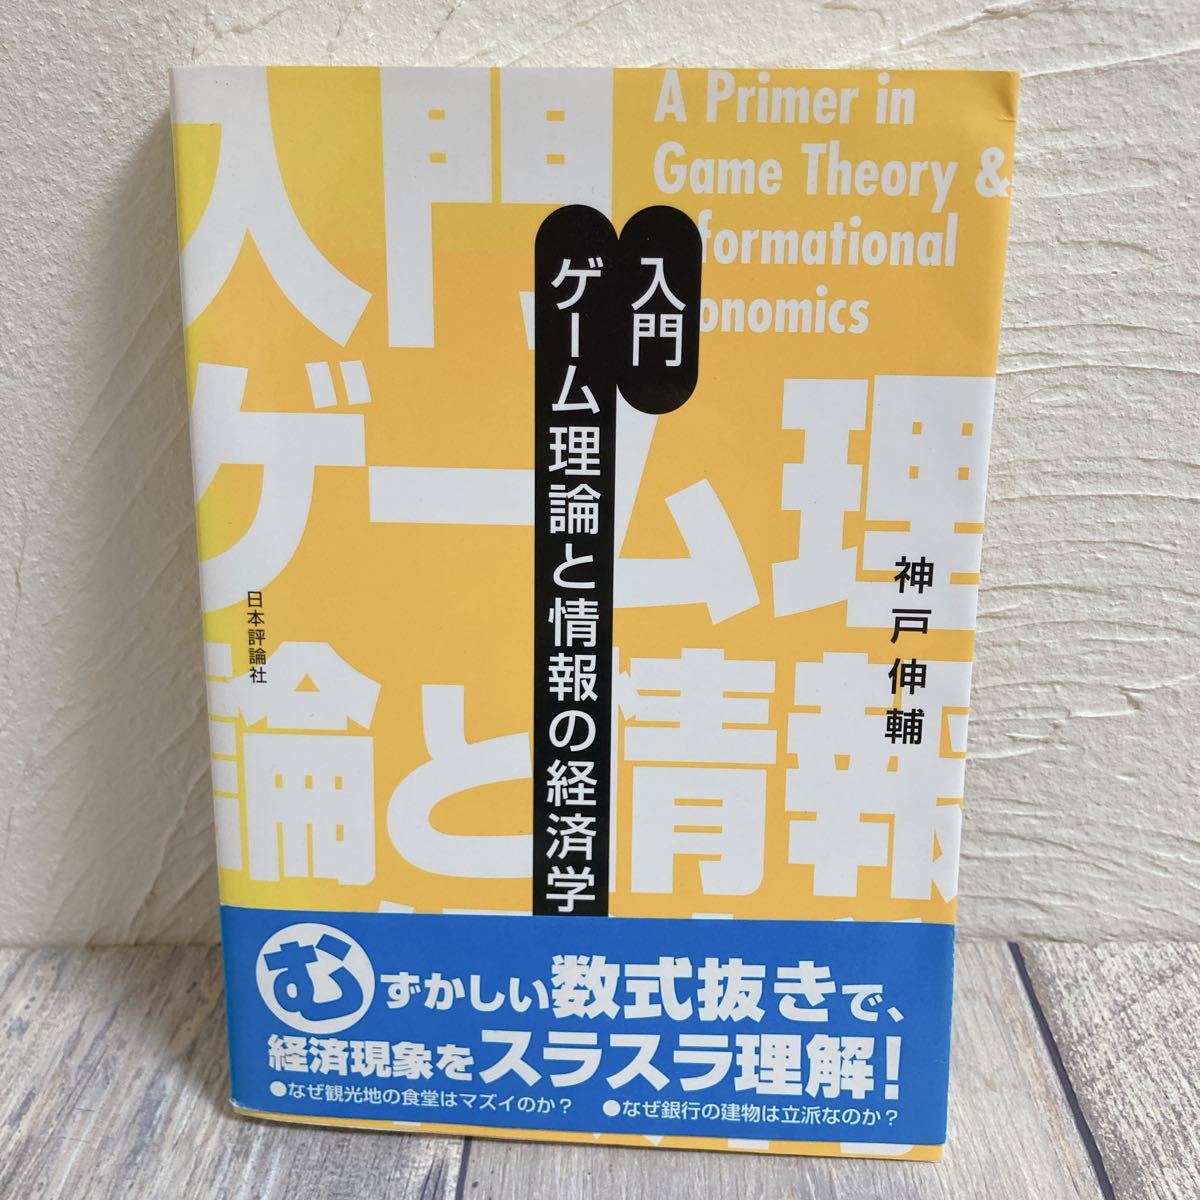 入門ゲーム理論と情報の経済学/神戸伸輔 